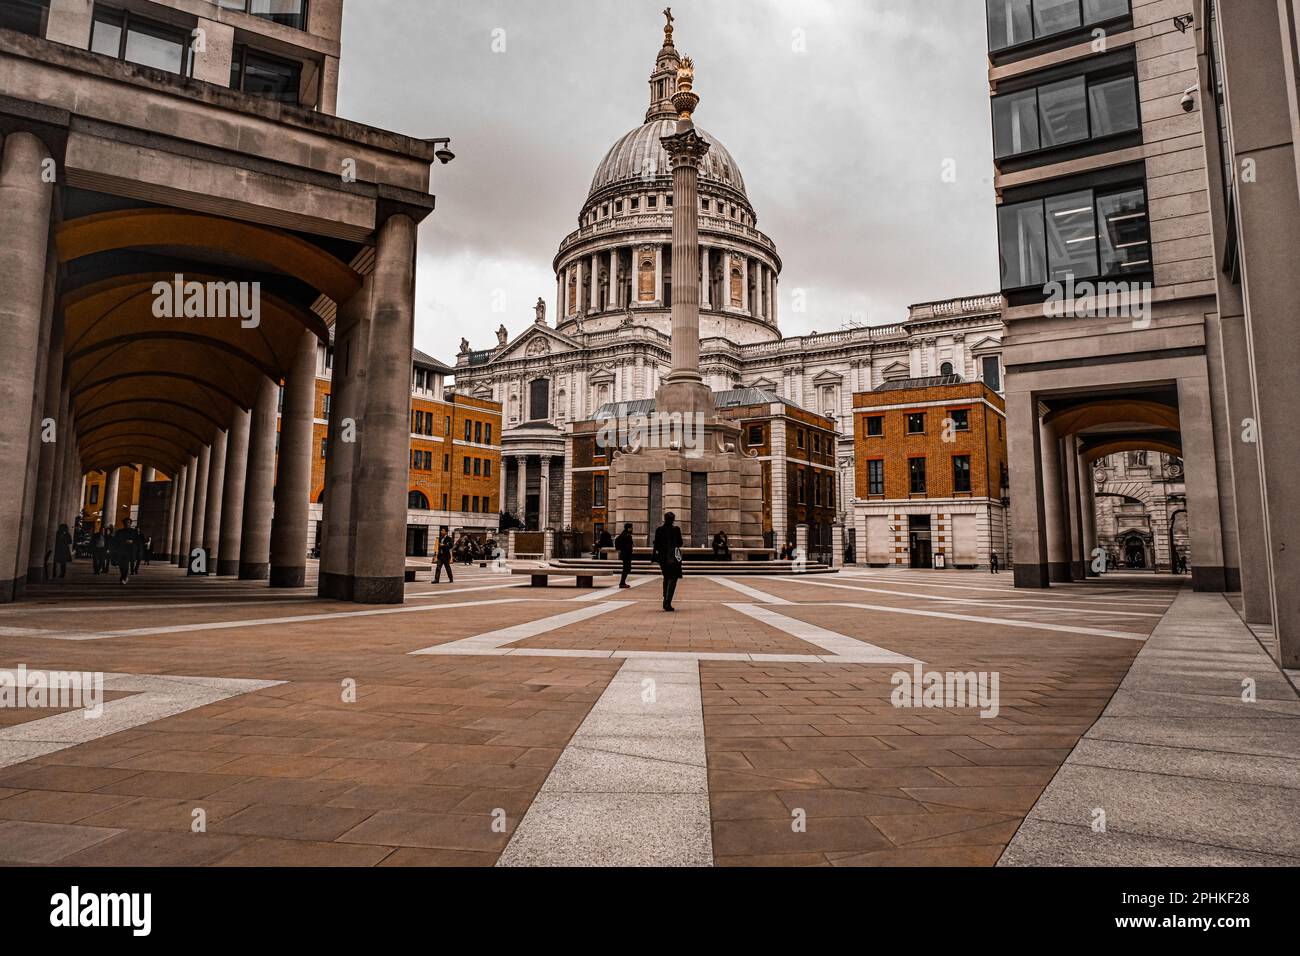 Cathédrale Saint-Paul, Londres, EC4M 8AD, aménagement architectural gothique indo, attraction londonienne Banque D'Images